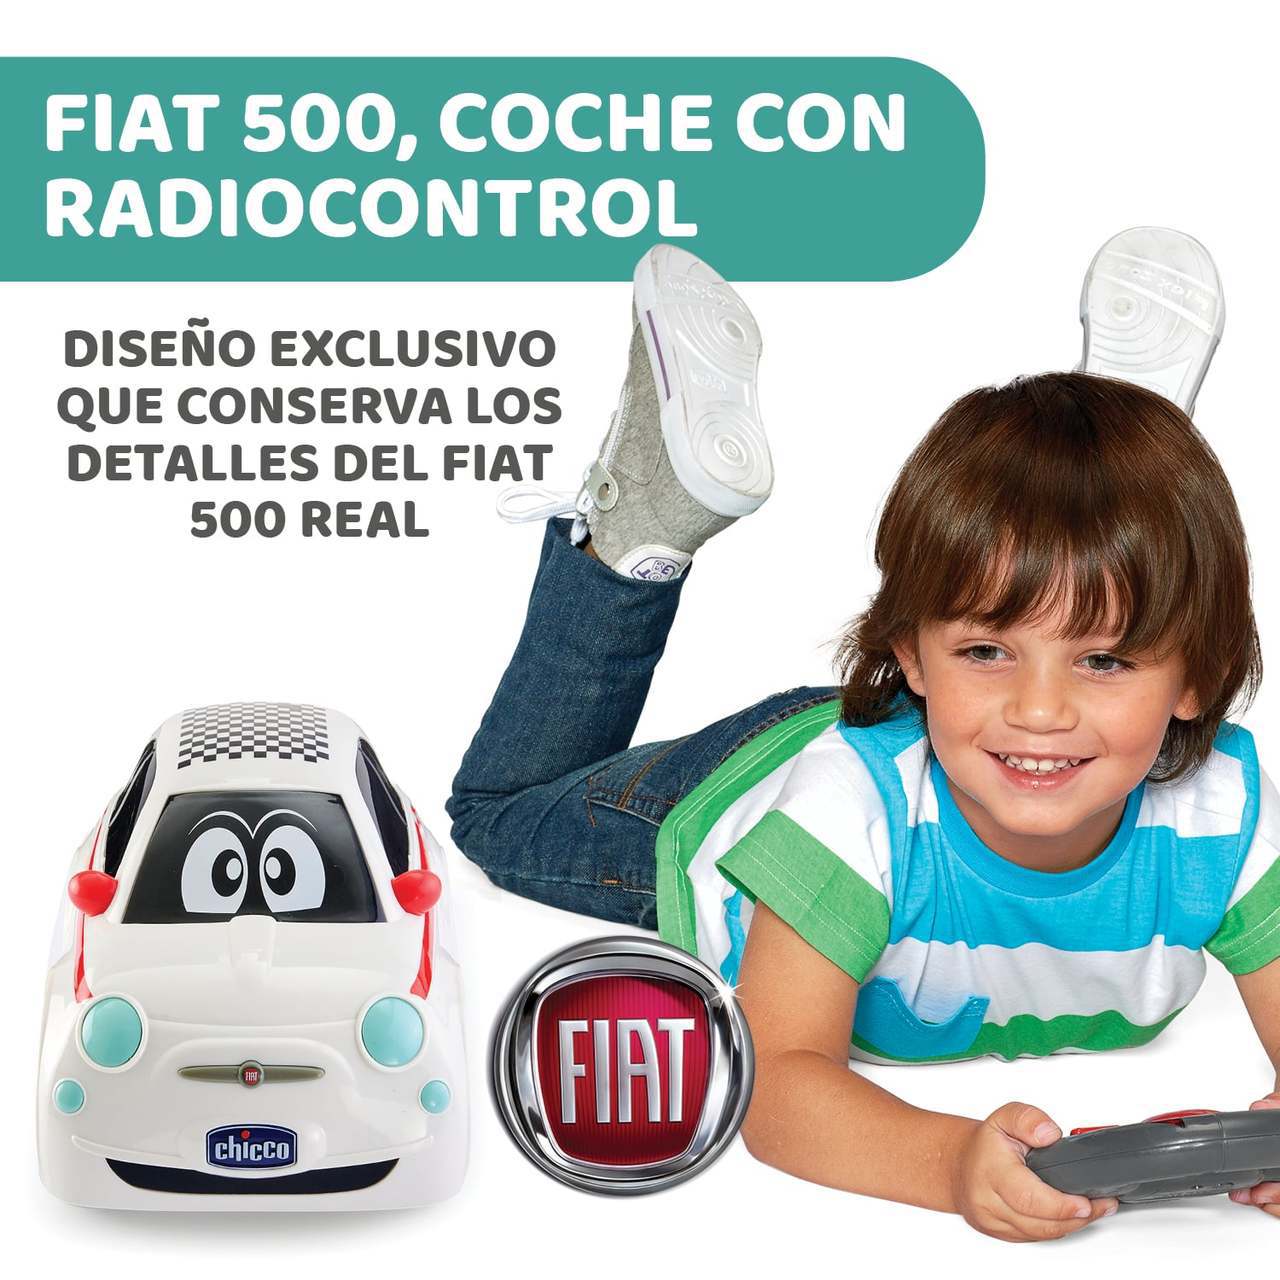 Rocky Crossover Coche Radio Control